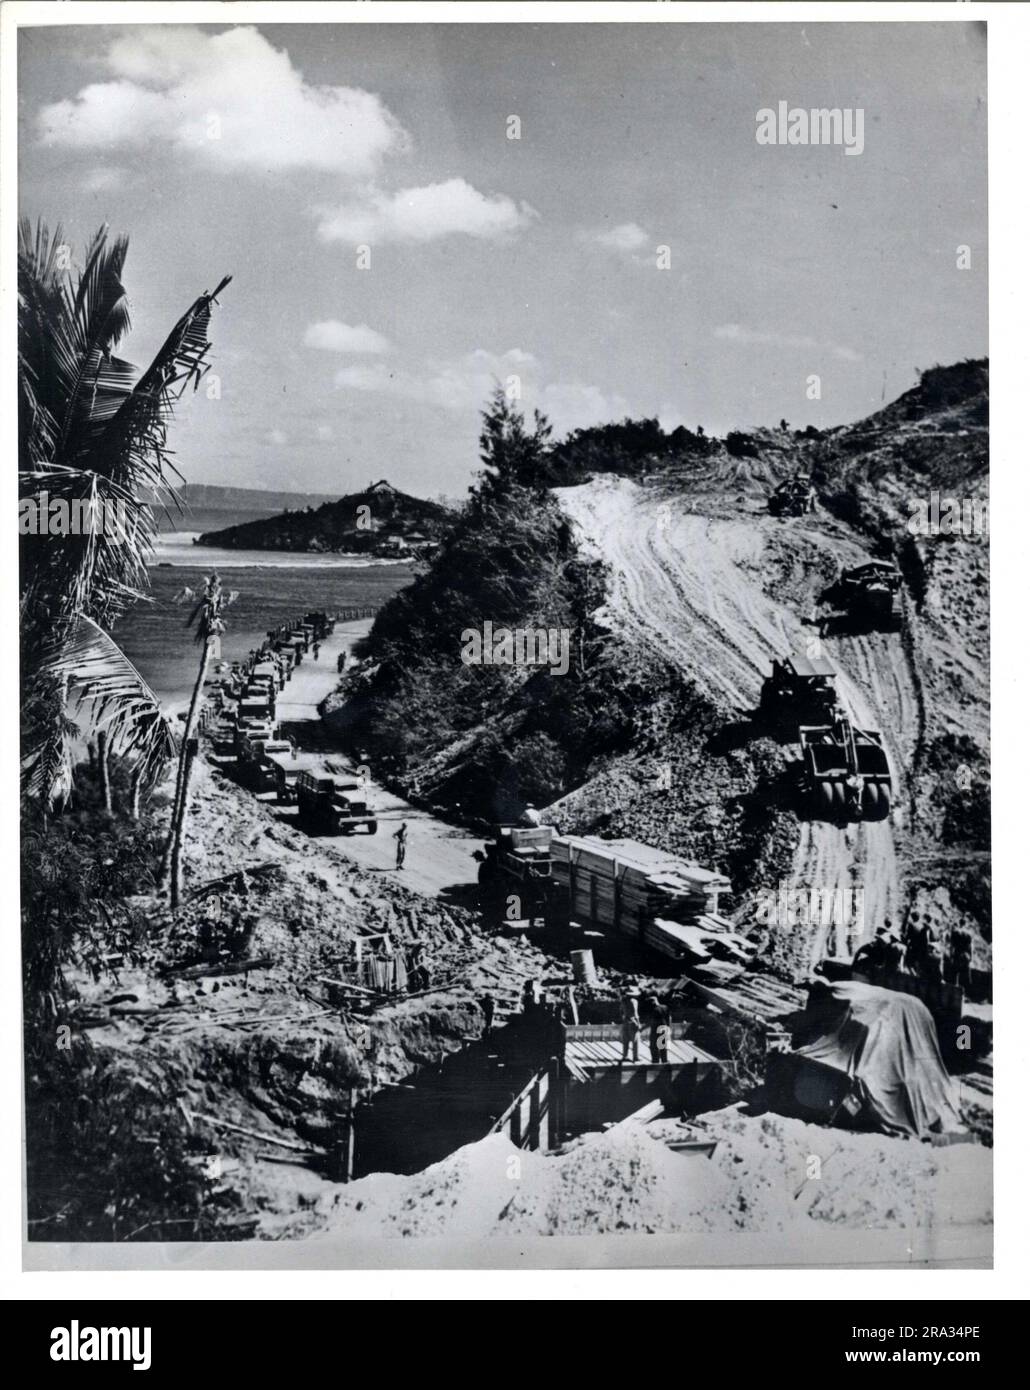 Kurven werden hier nicht berücksichtigt. SeaBees auf Guam folgten zunächst dem einfachsten Weg, um schnell eine nutzbare Straße zu schaffen. Hier entfernen sie einen Teil eines Berges, um eine Kurve vor dem Pflaster zu entfernen. 1946-01-01T00:00:00. Stockfoto